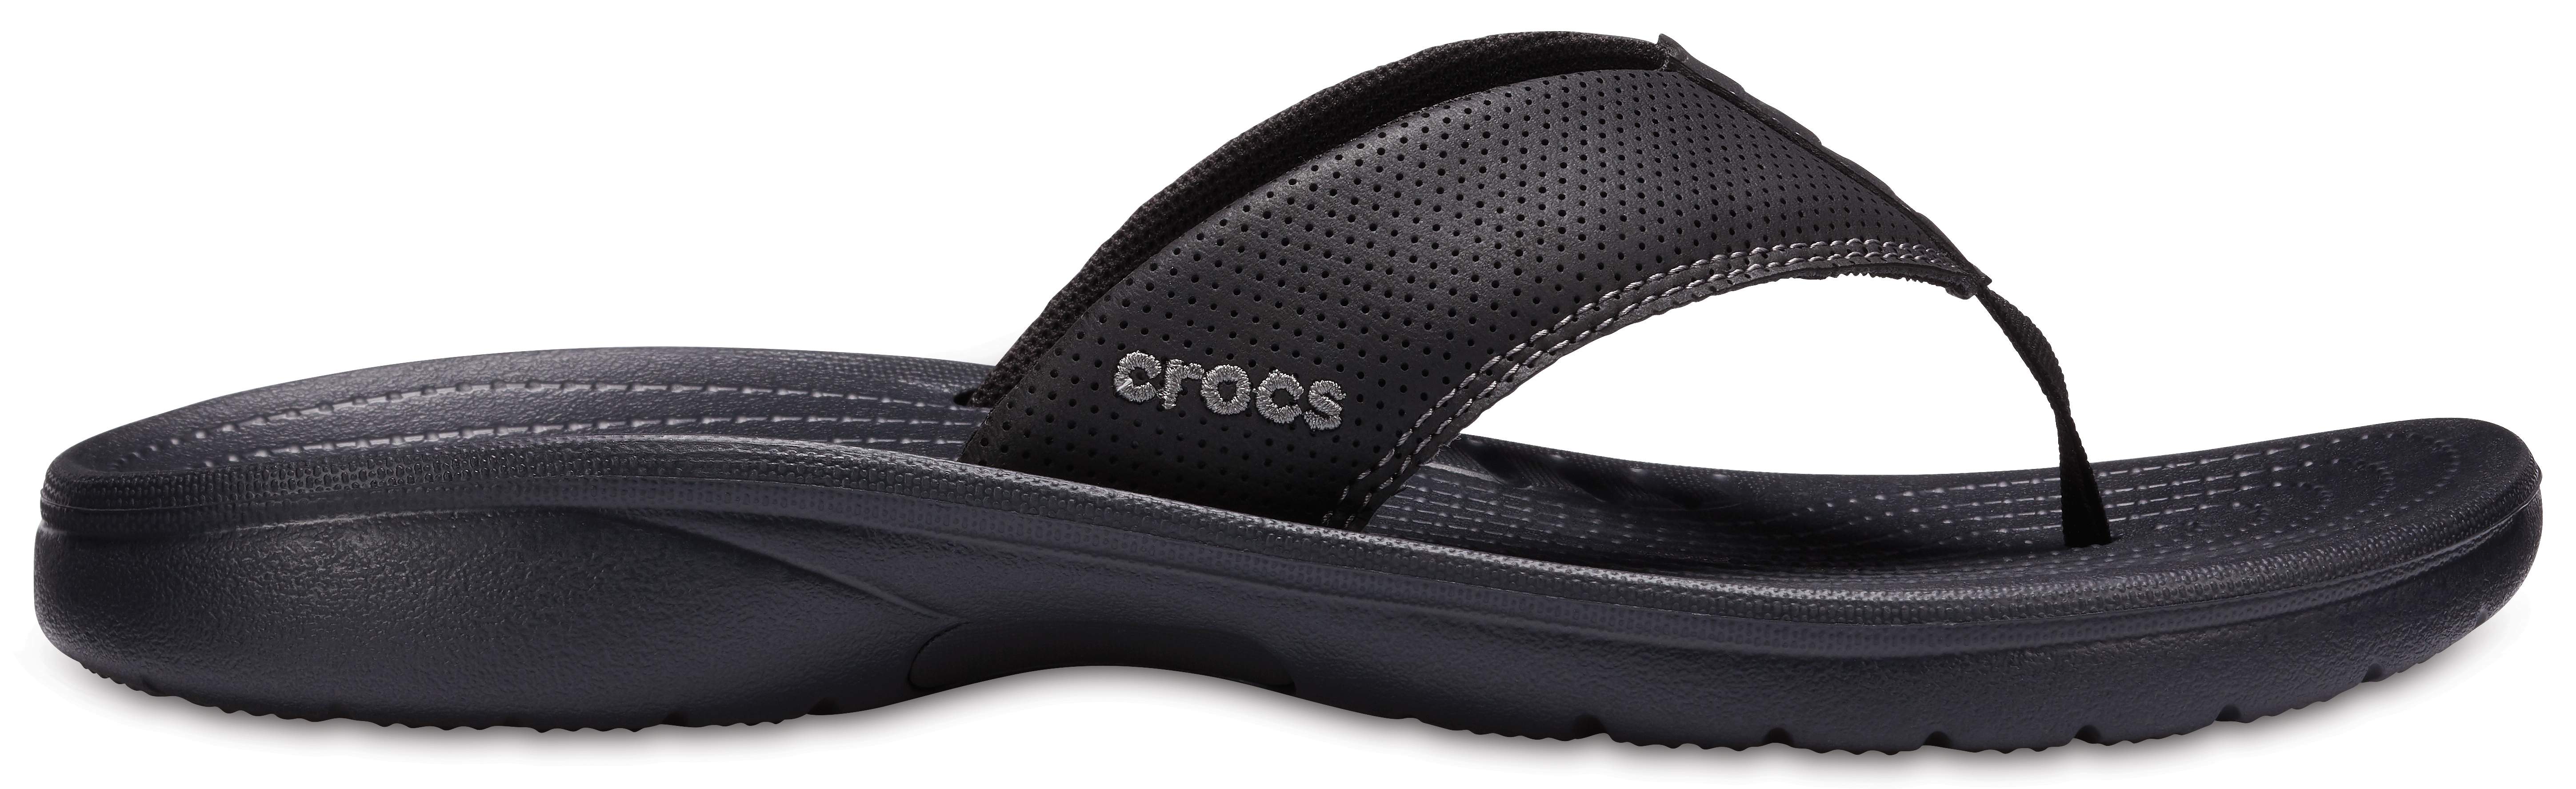 crocs men's bogota flip flop